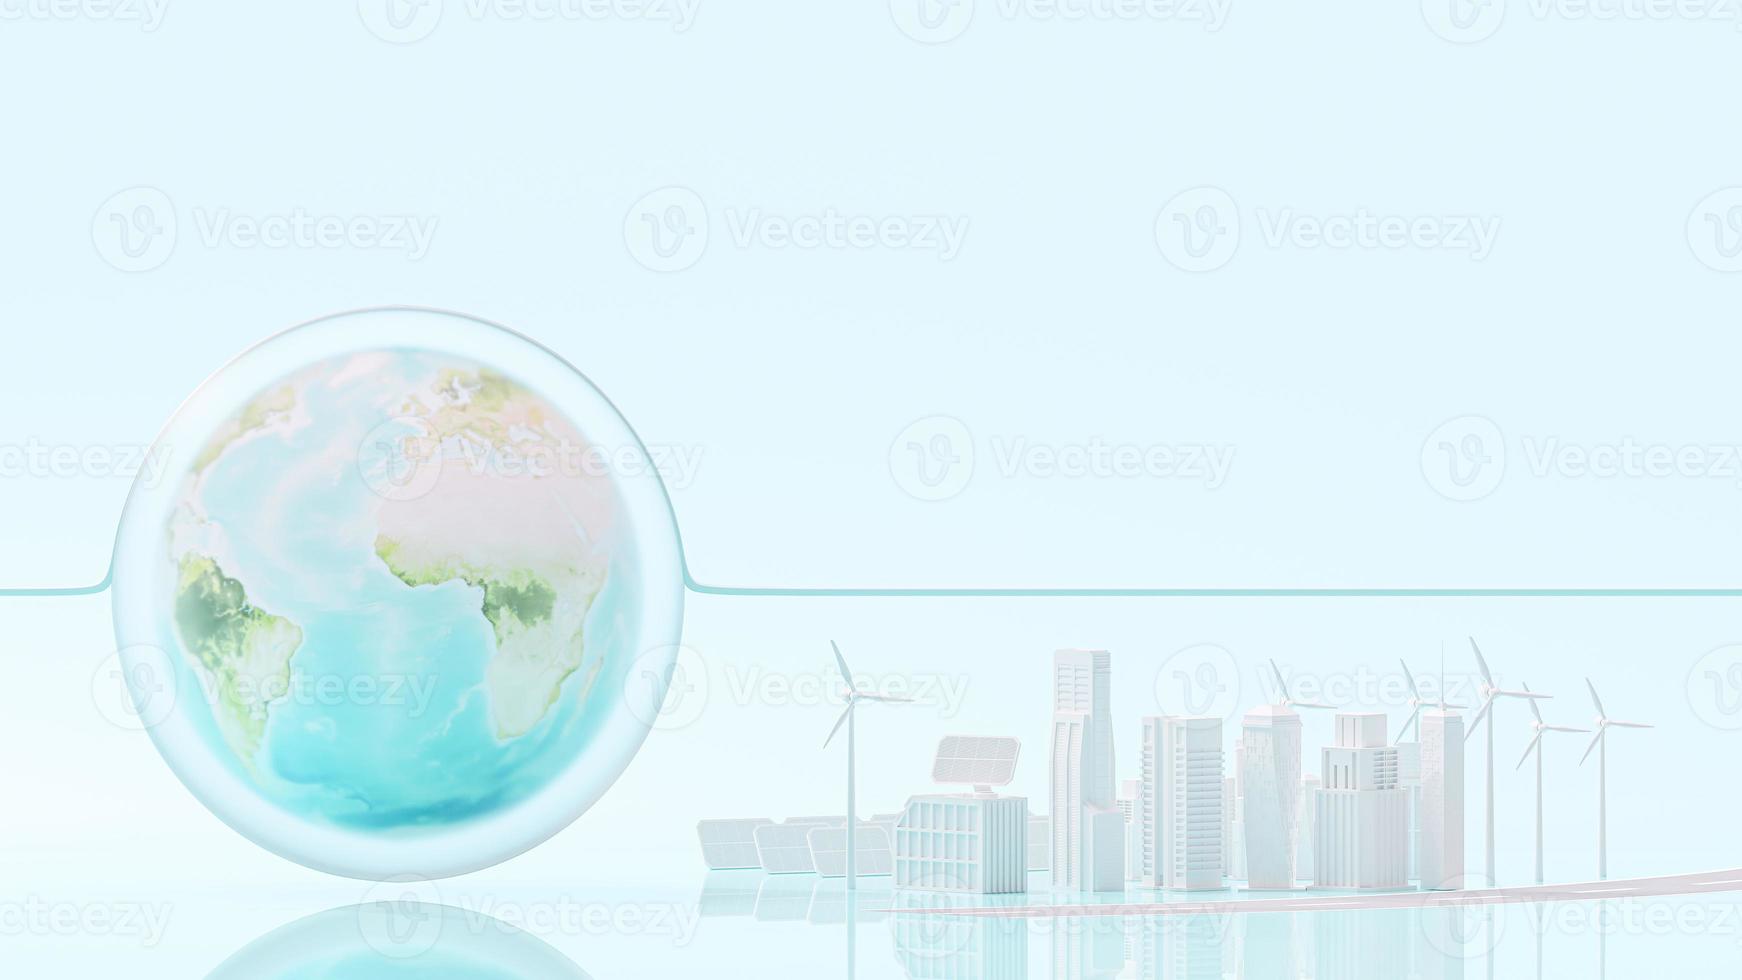 globo y ciudad blanca energía eléctrica limpia a partir de fuentes de energía renovables, sol y viento. conceptos ambientales y ecológicos. foto